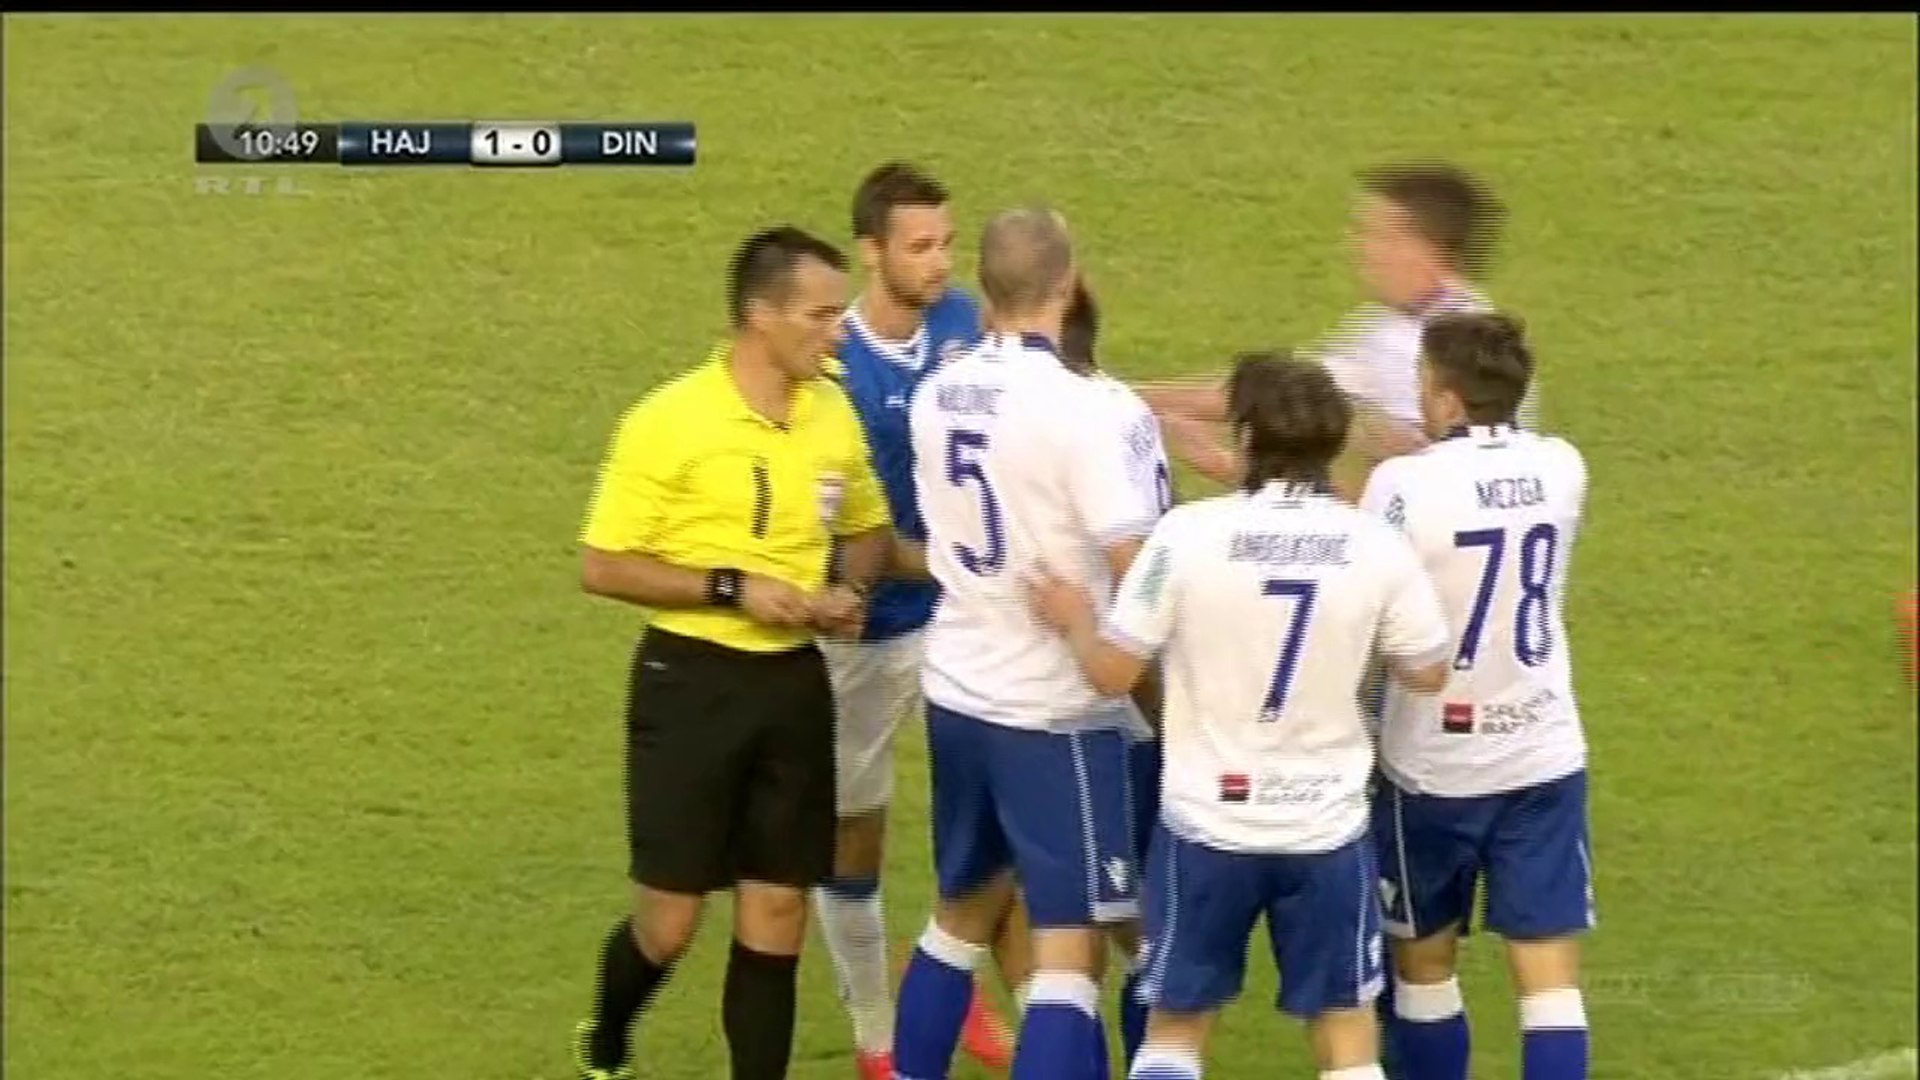 Hajduk Split vs Dinamo Zagreb, 1-0